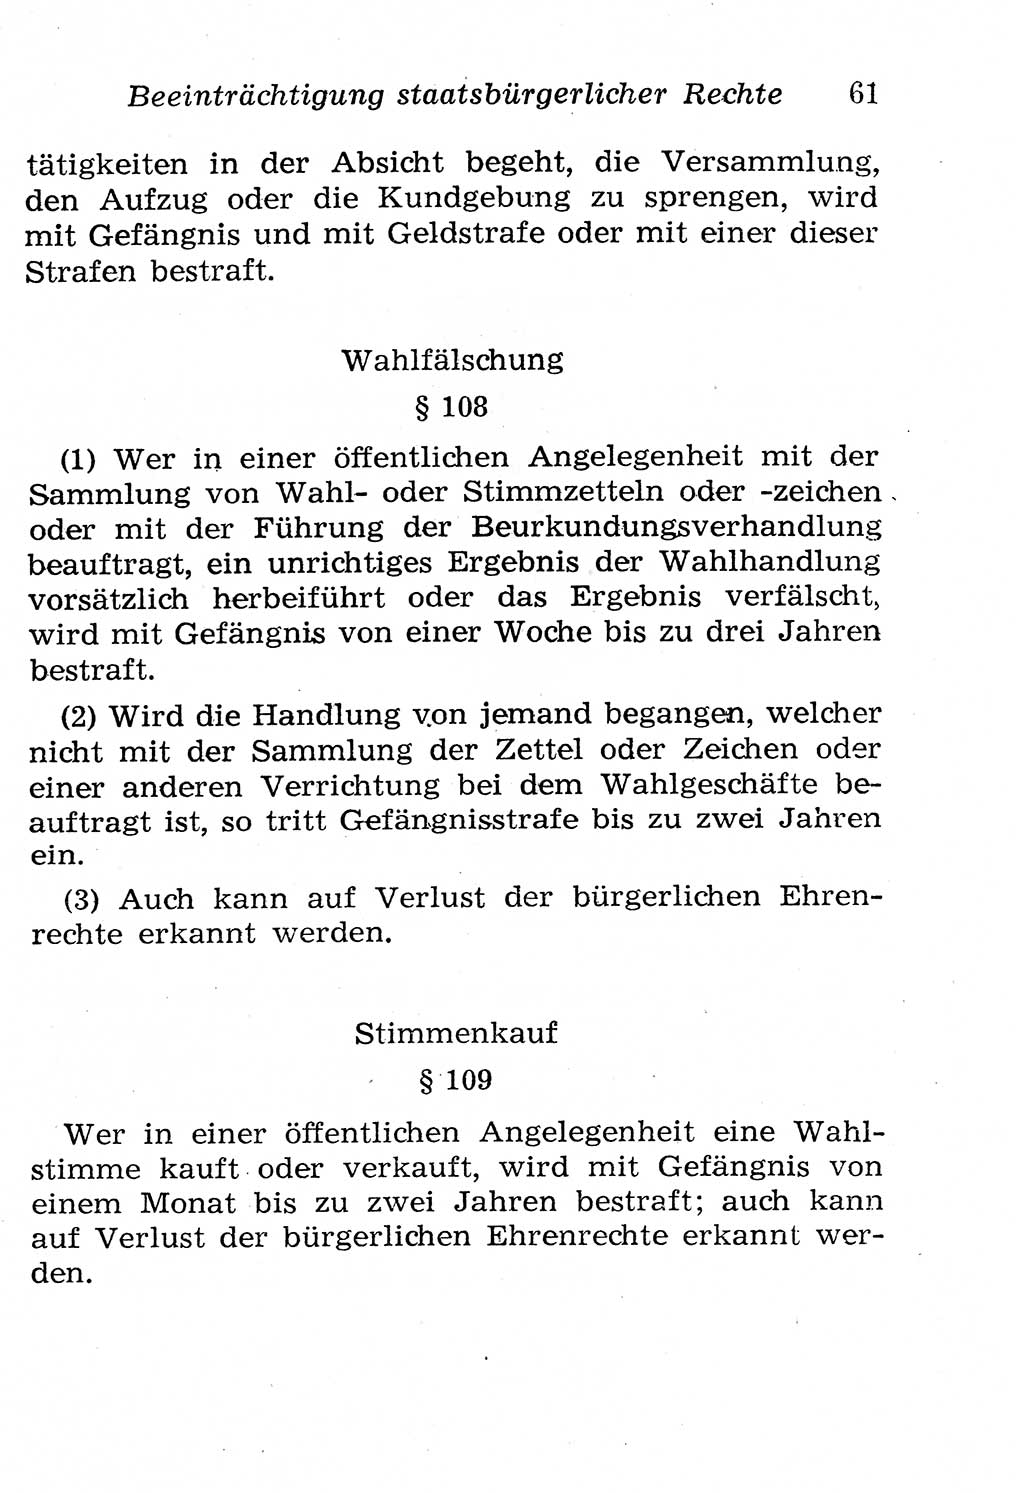 Strafgesetzbuch (StGB) und andere Strafgesetze [Deutsche Demokratische Republik (DDR)] 1958, Seite 61 (StGB Strafges. DDR 1958, S. 61)